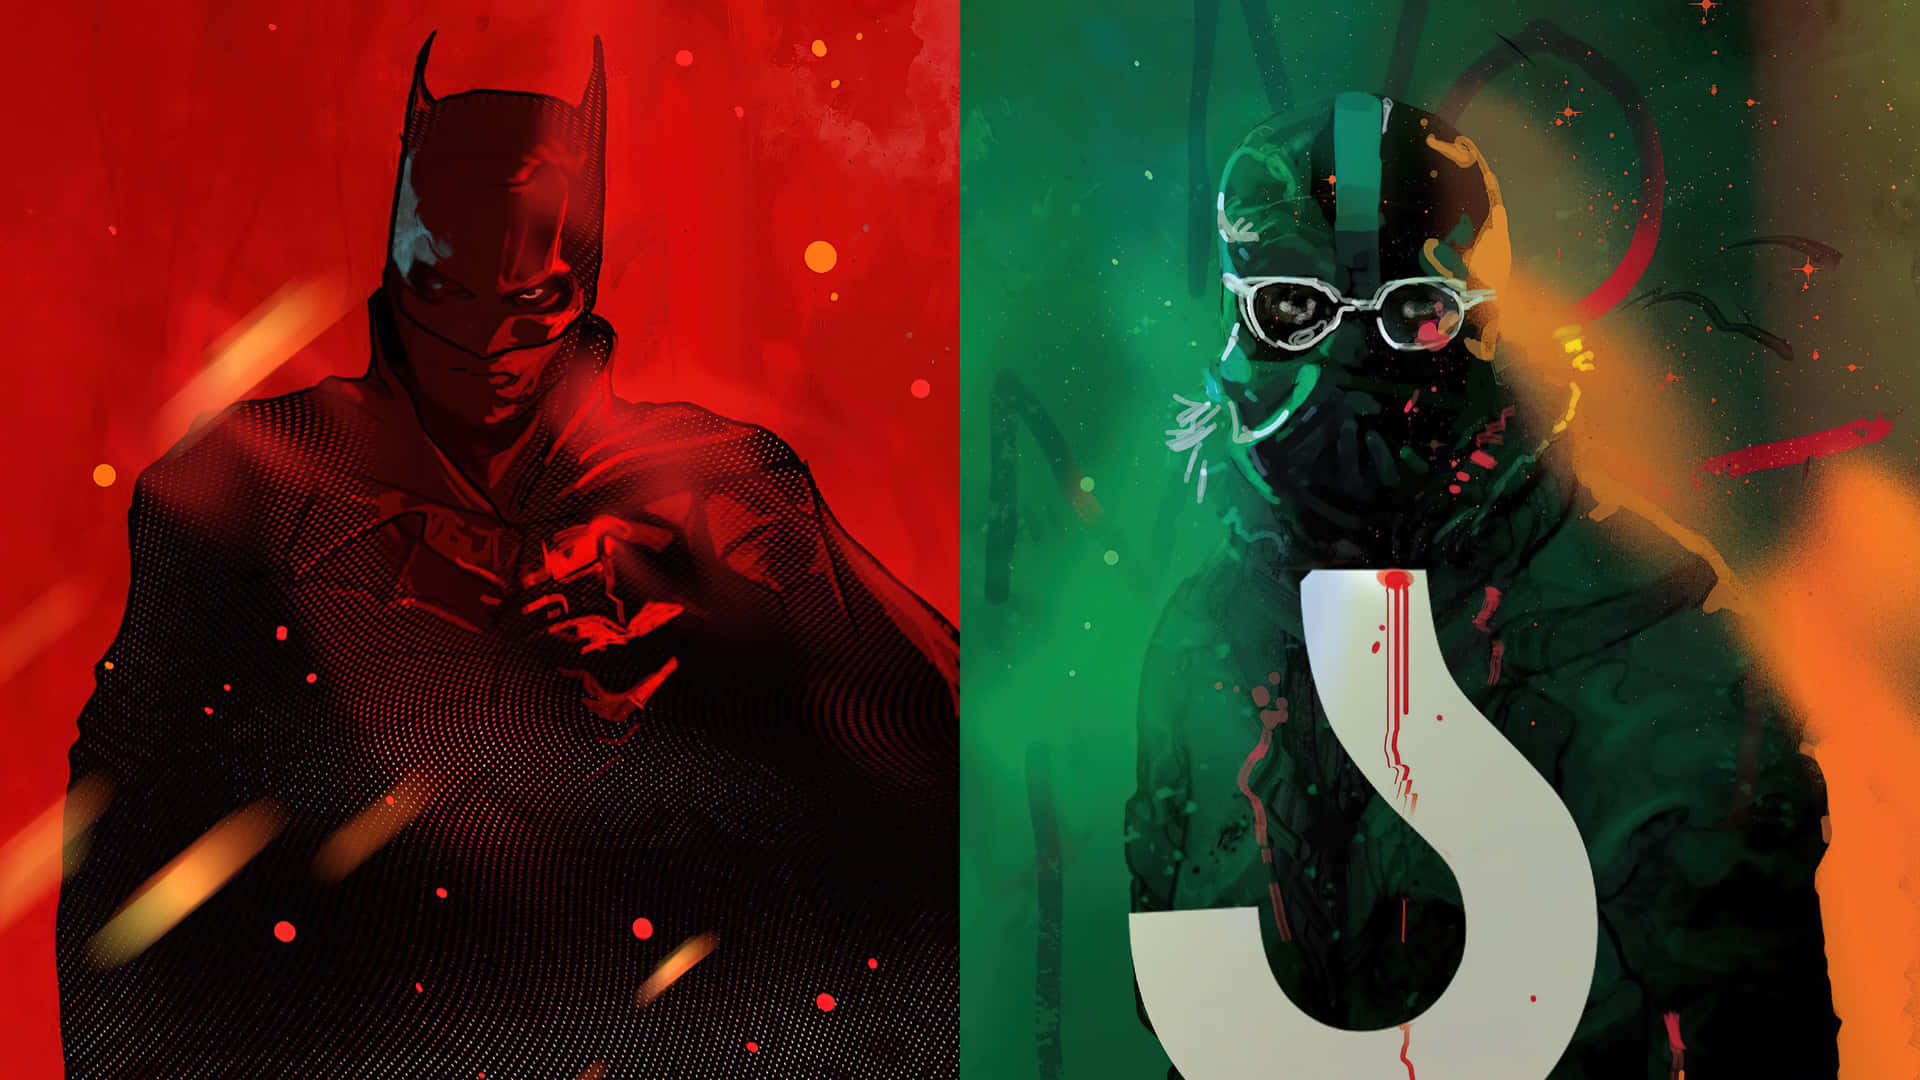 Download Batman Vs Dc Comics - A New Look Wallpaper 